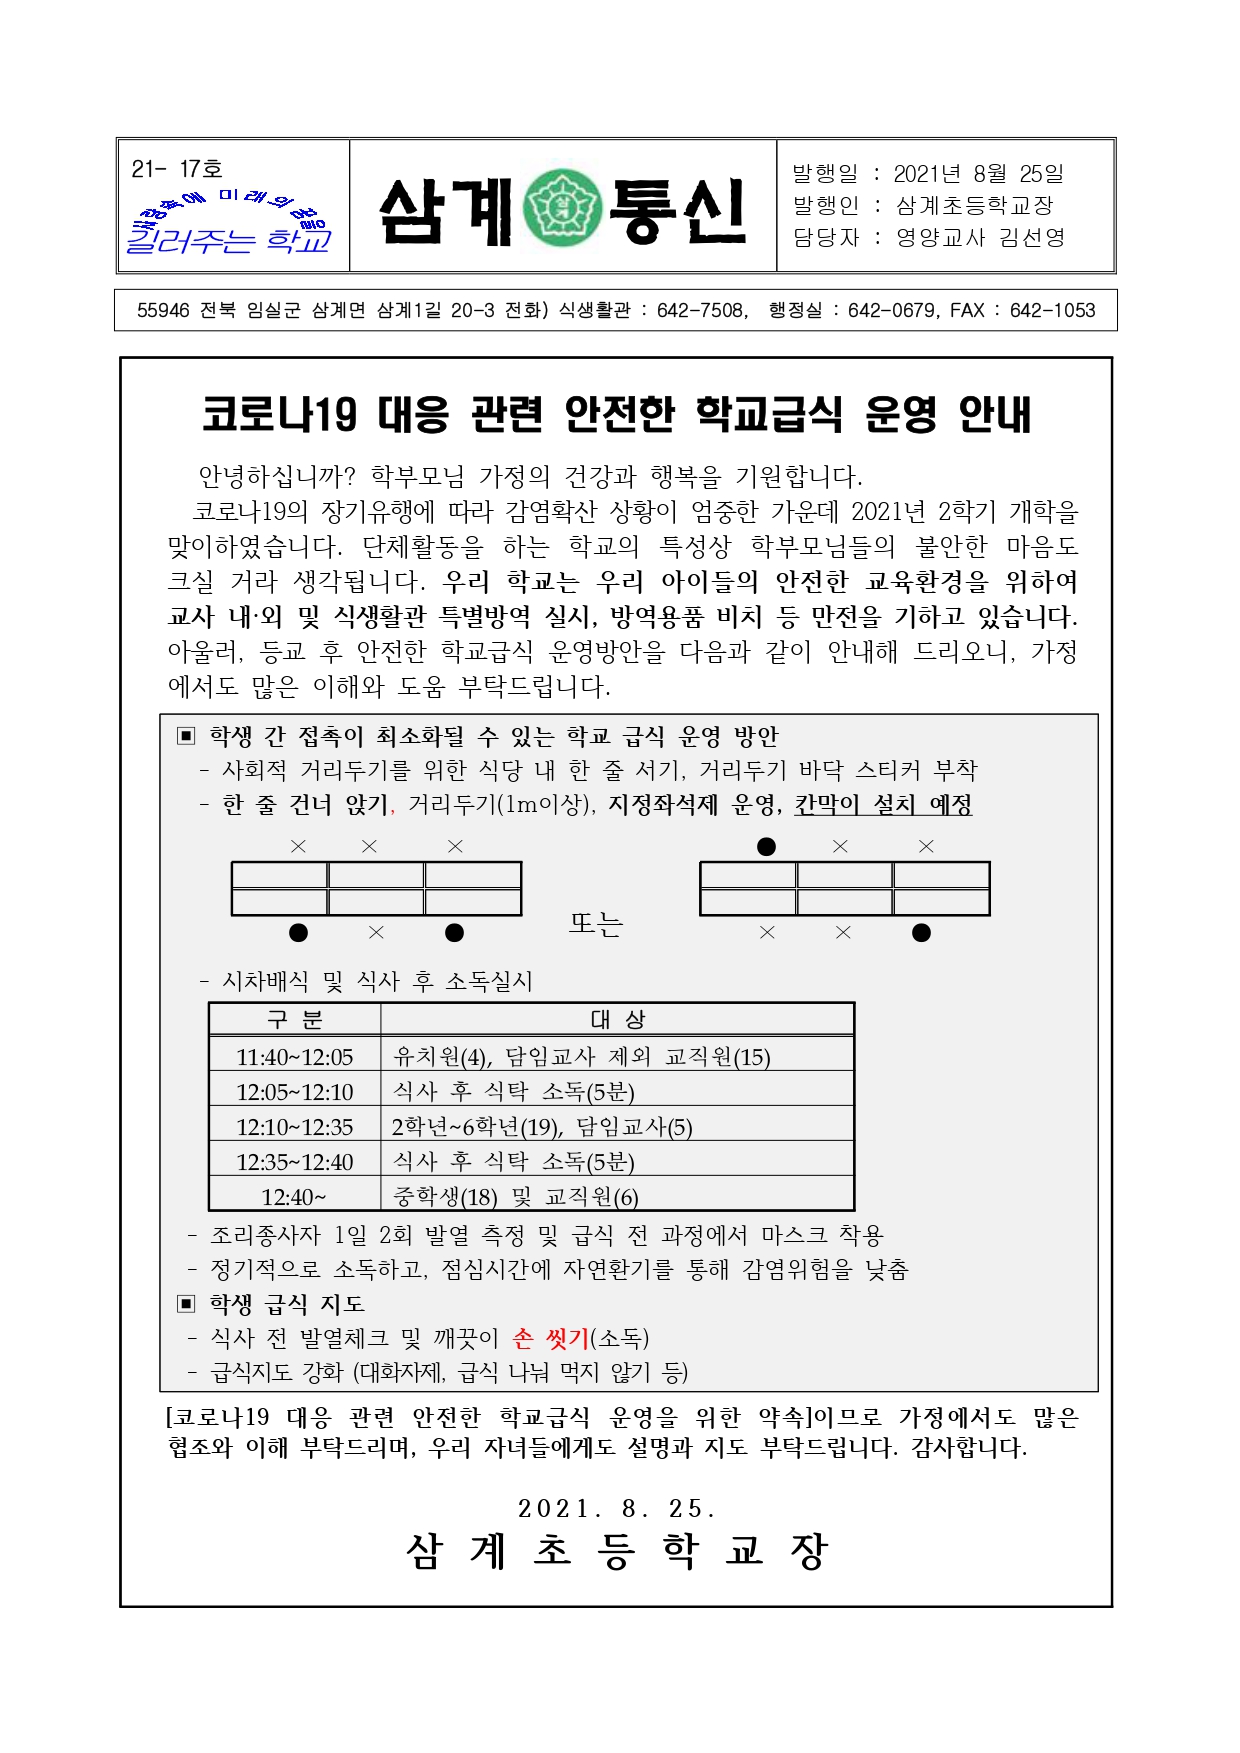 코로나19 대응 관련 안전한 학교급식 운영 안내(가정통신문)_page-0001